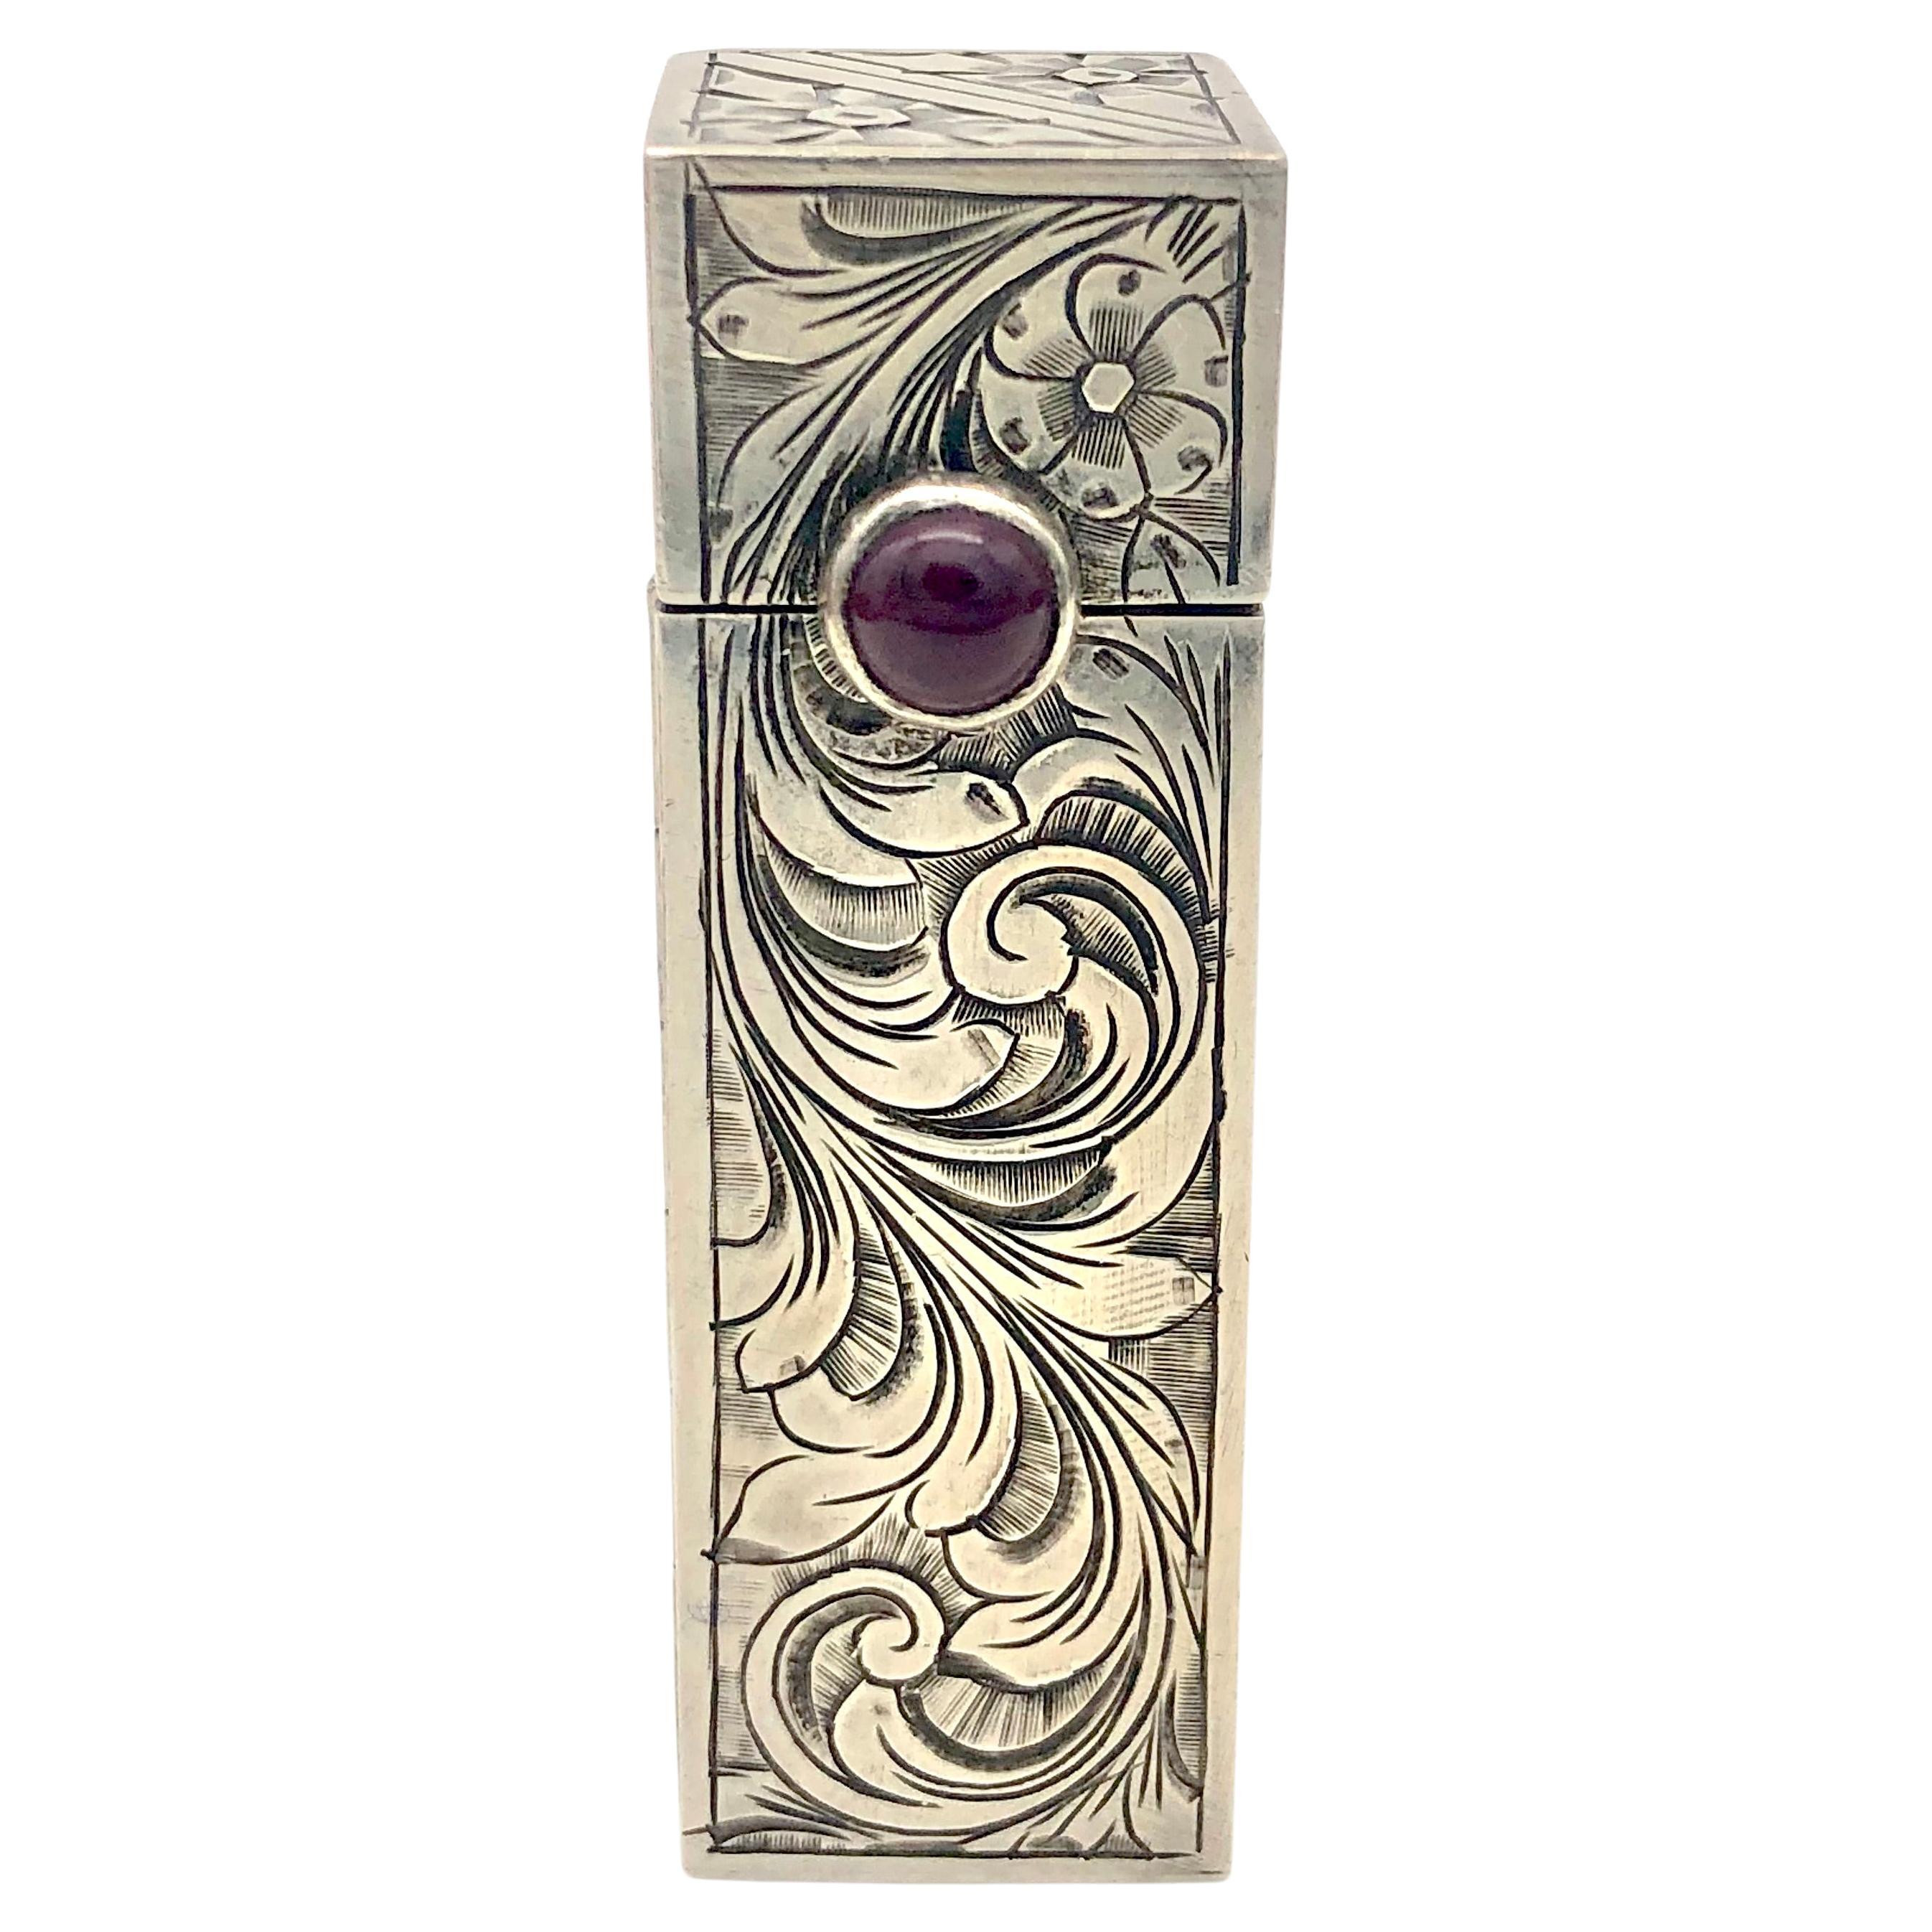 Antike Art Deco Silber Lippenstifthalter mit Spiegel Amethyst Cabochon  